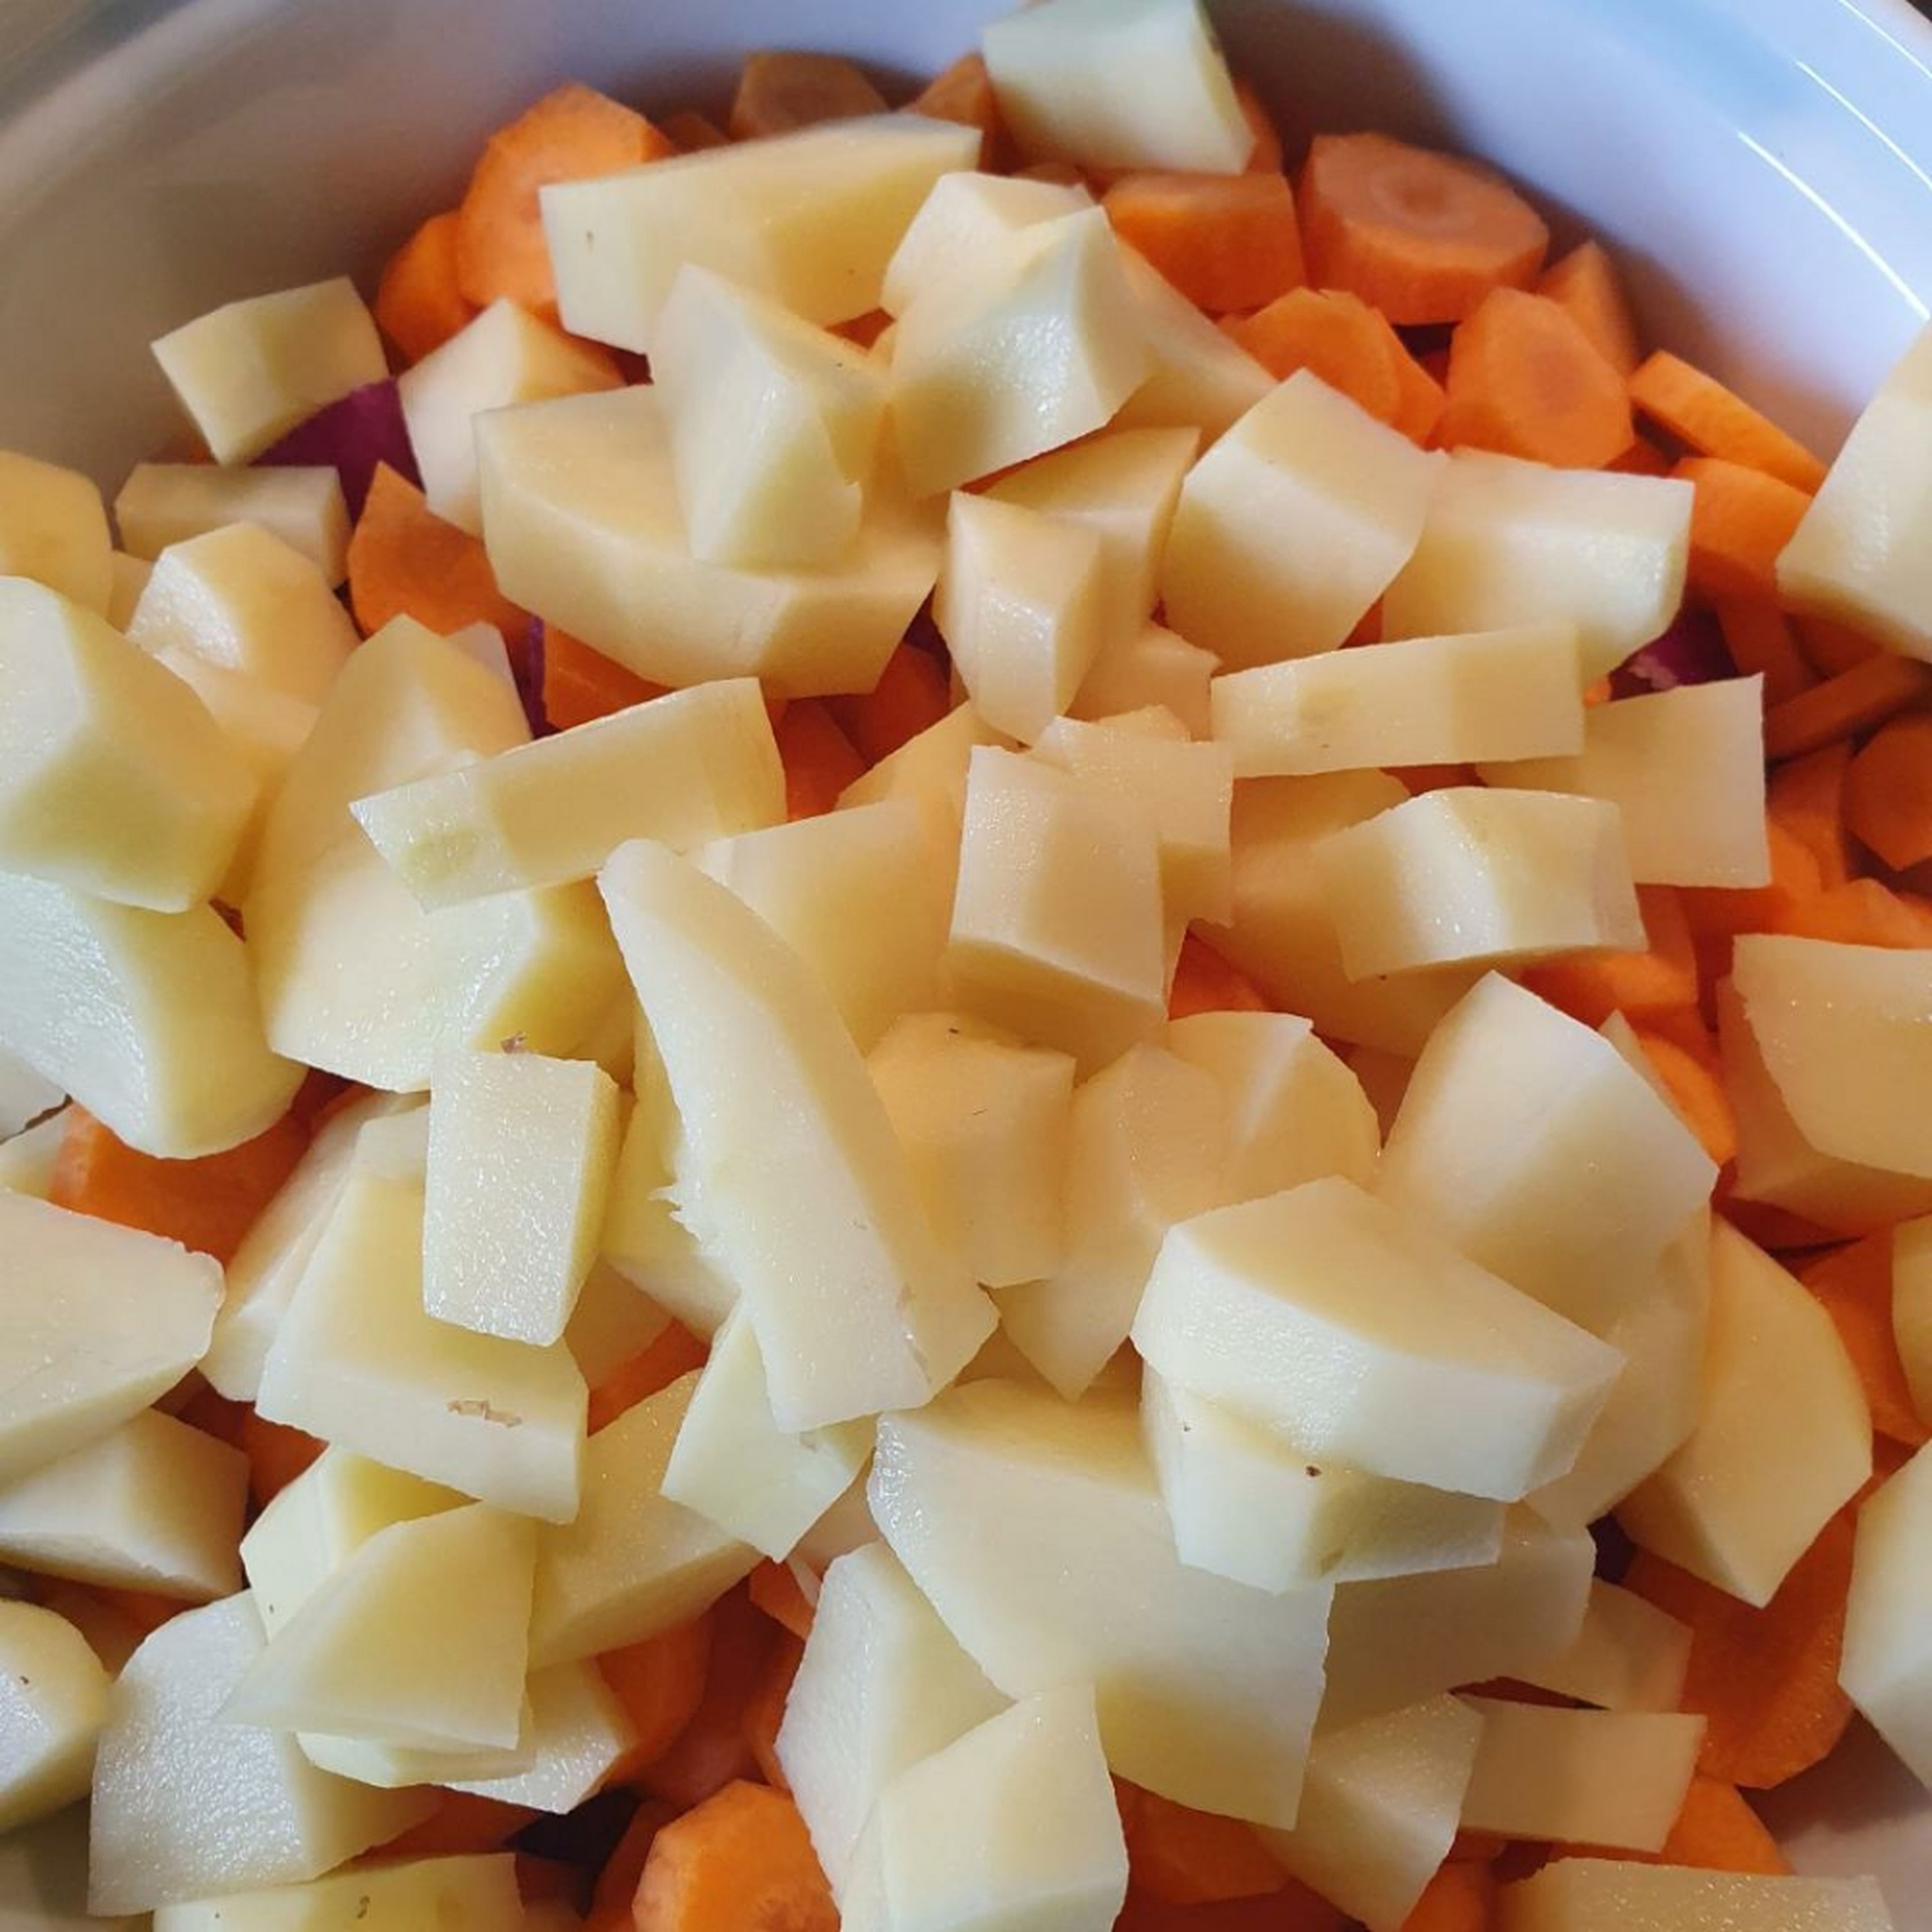 Zwiebeln in grobe Stücke schneiden. Karotten in Scheiben schneiden. Kartoffeln würfeln. Alles zusammen in den Topf zum Fleisch geben.